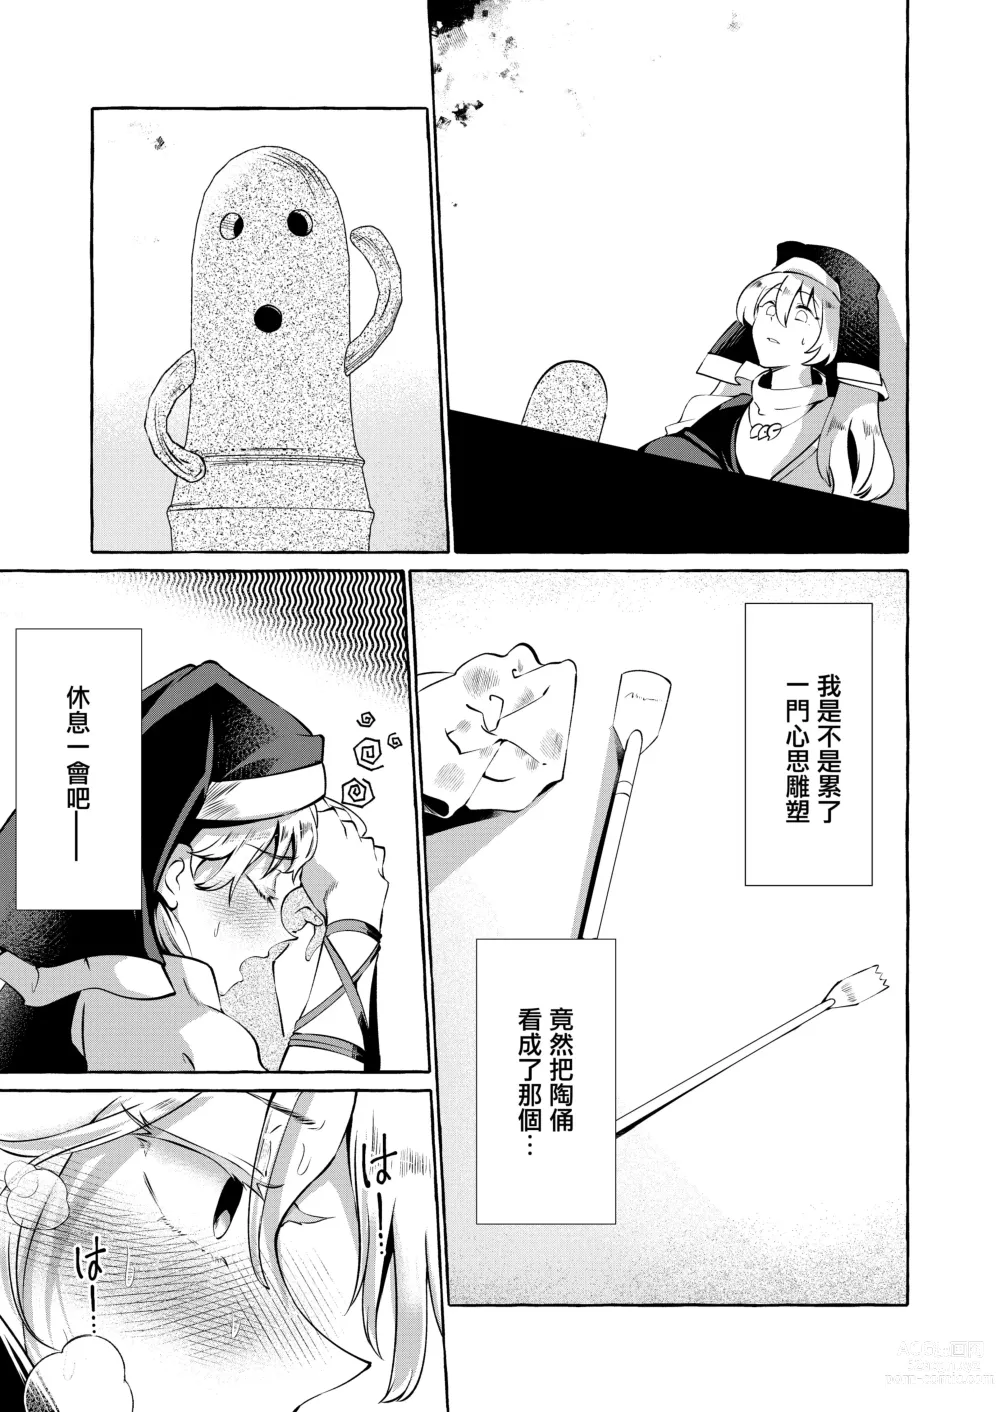 Page 4 of doujinshi 將肢體托付於妄想